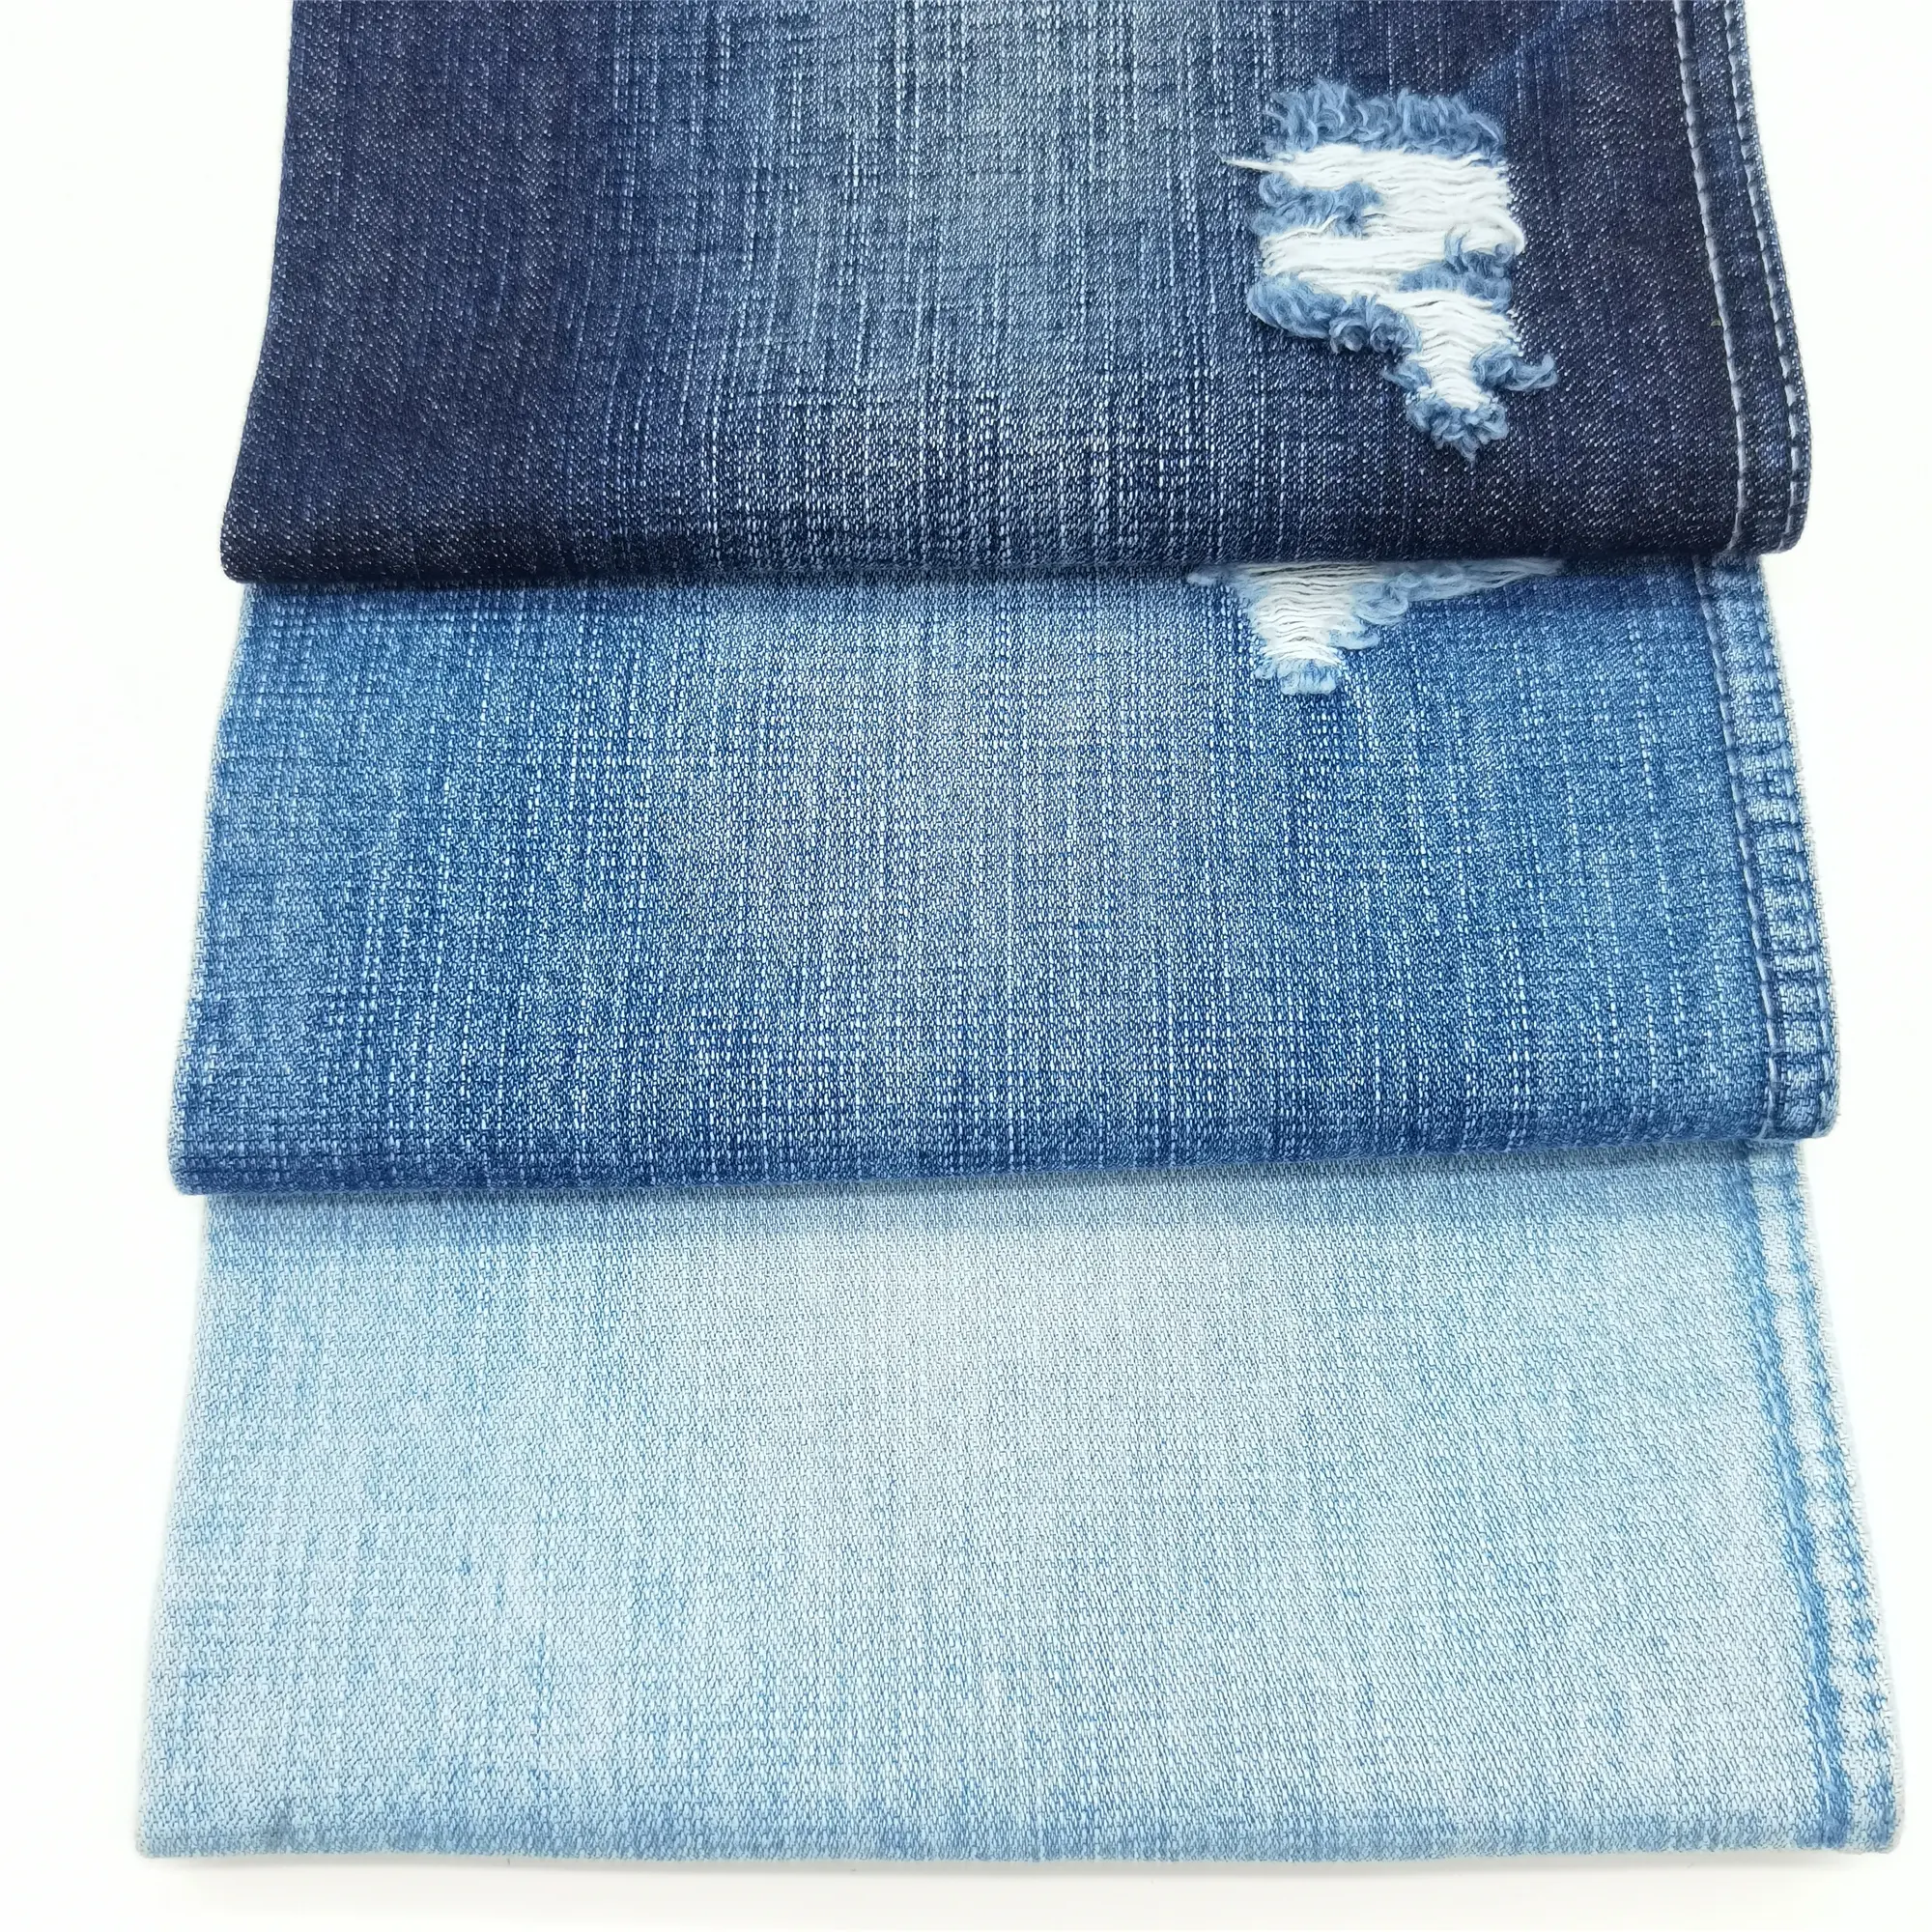 11.5 Oz Indigo Kleur 100% Katoen Textiel Hoge Kwaliteit Twill Geweven Slub Denim Stof Voorraad Voor Jeans